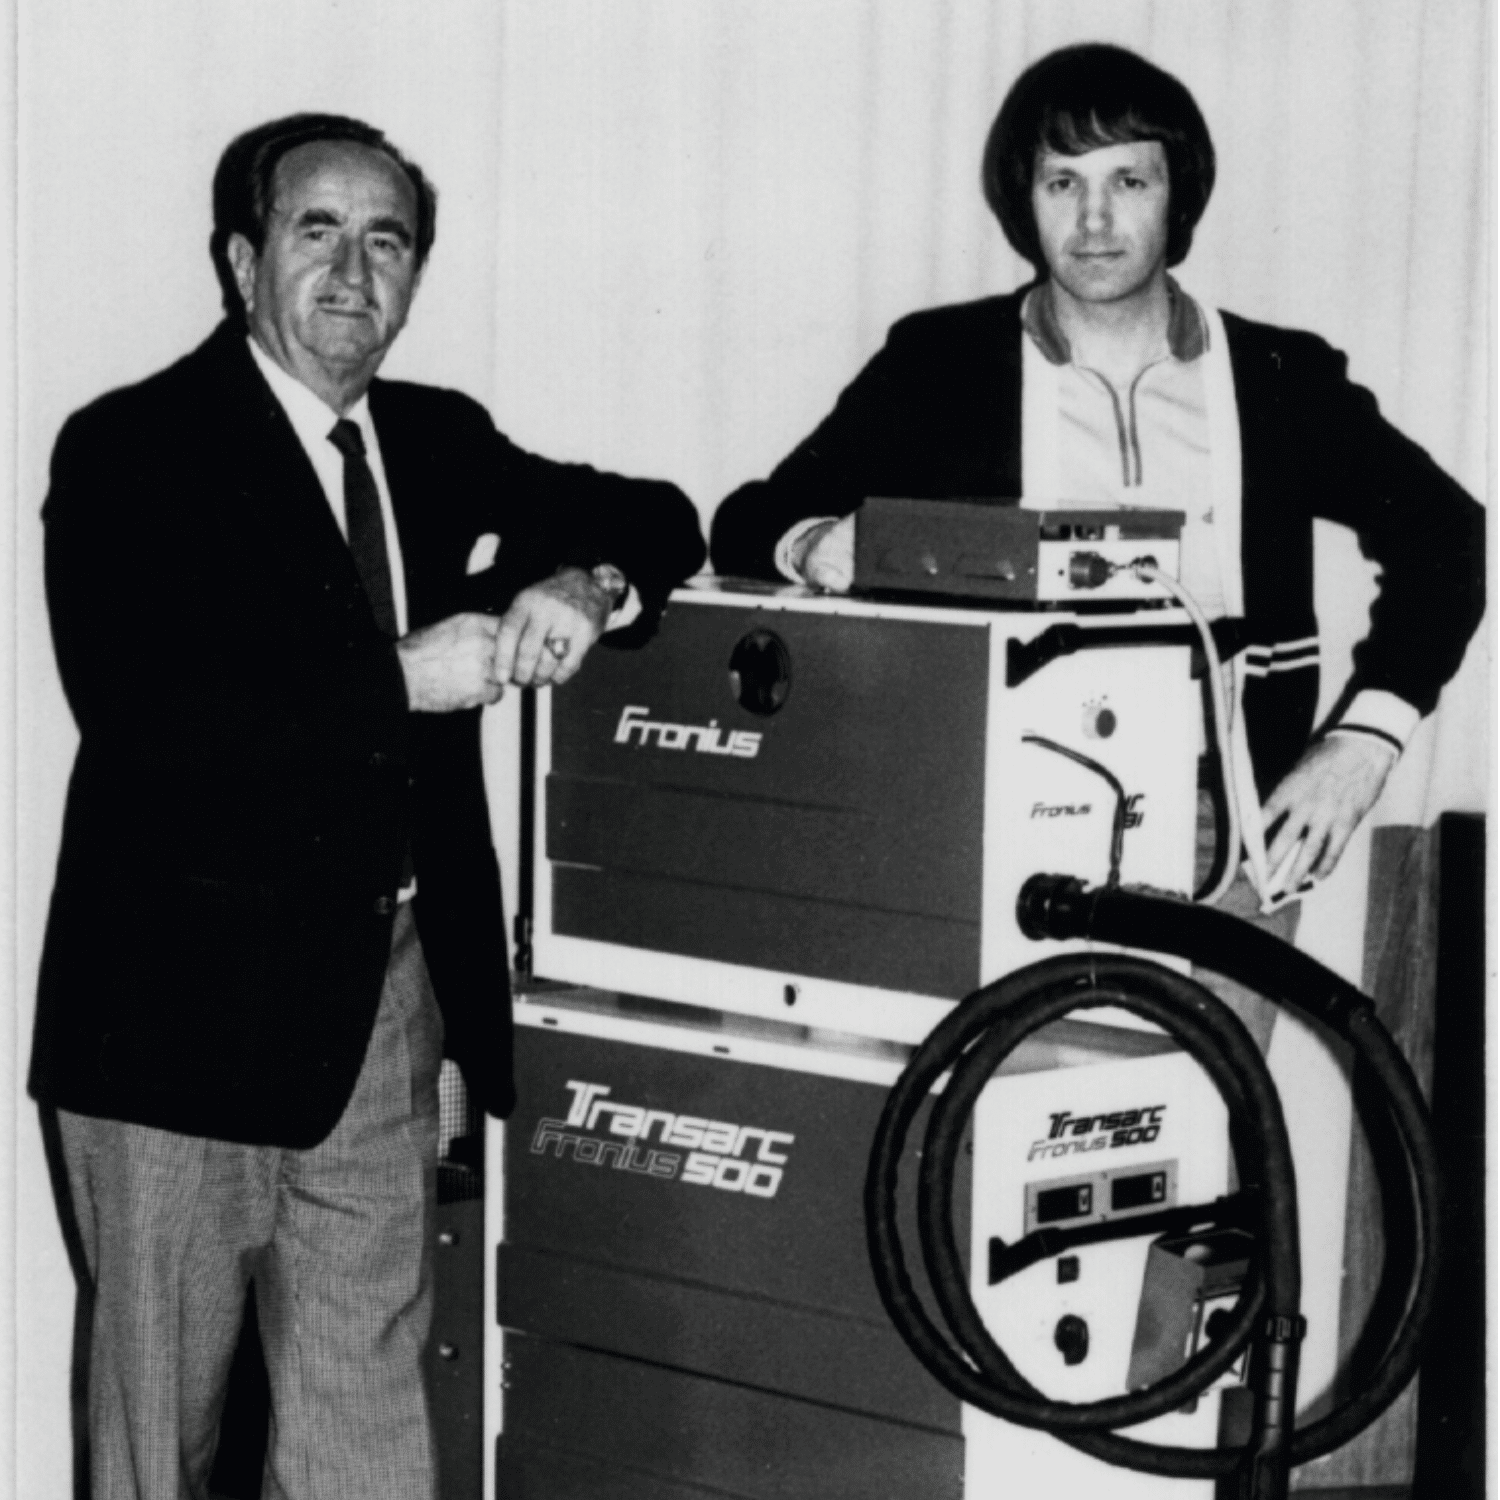 Grundaren Günter Fronius (vänster) med den första första strömkällan TransArc 500